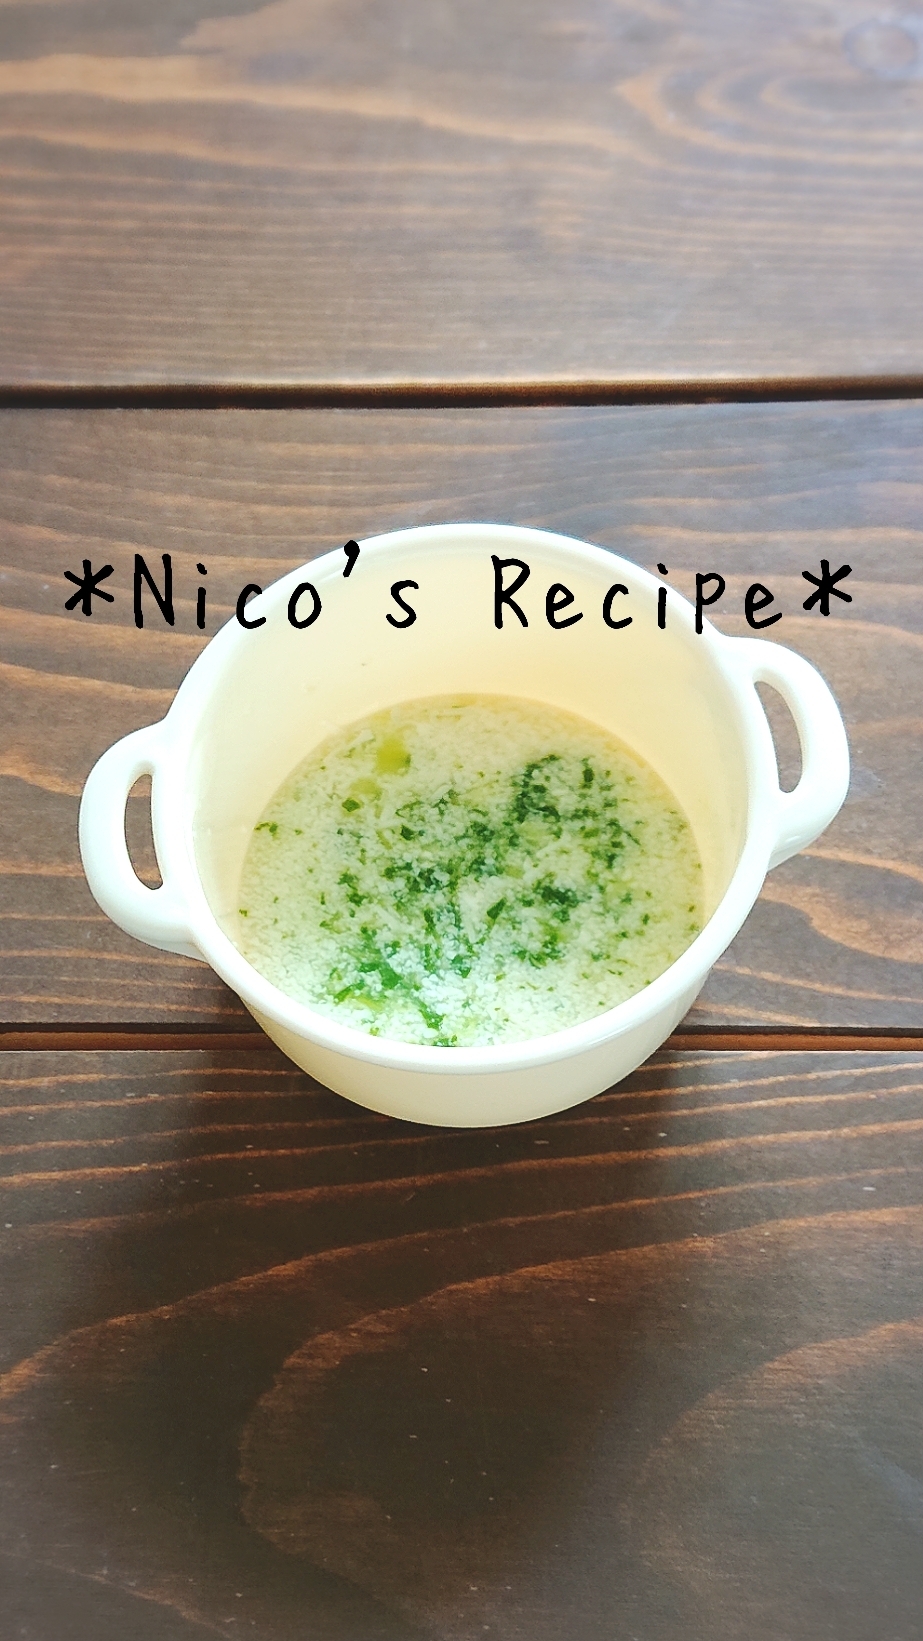 離乳食初期・小松菜と豆腐のスープ